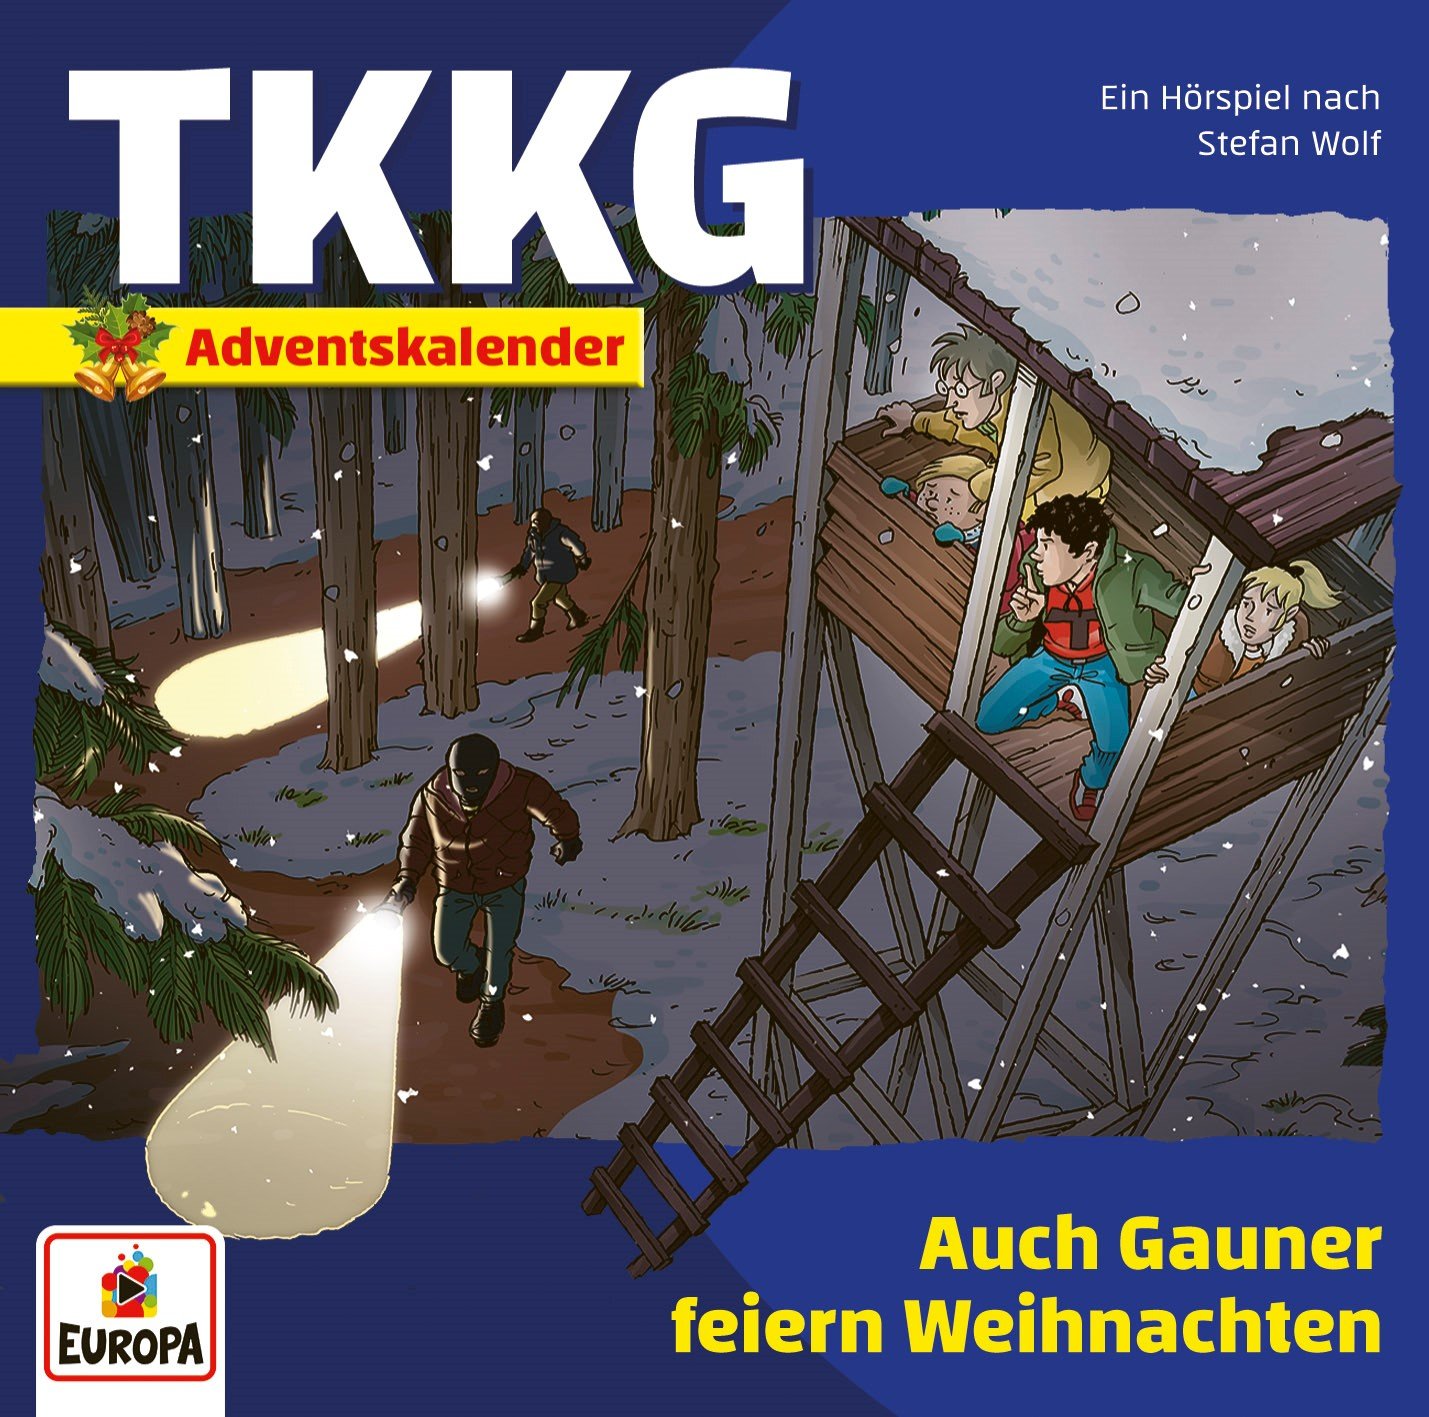 TKKG HörspielAuch Gauner feiern Weihnachten (Adventskalender)